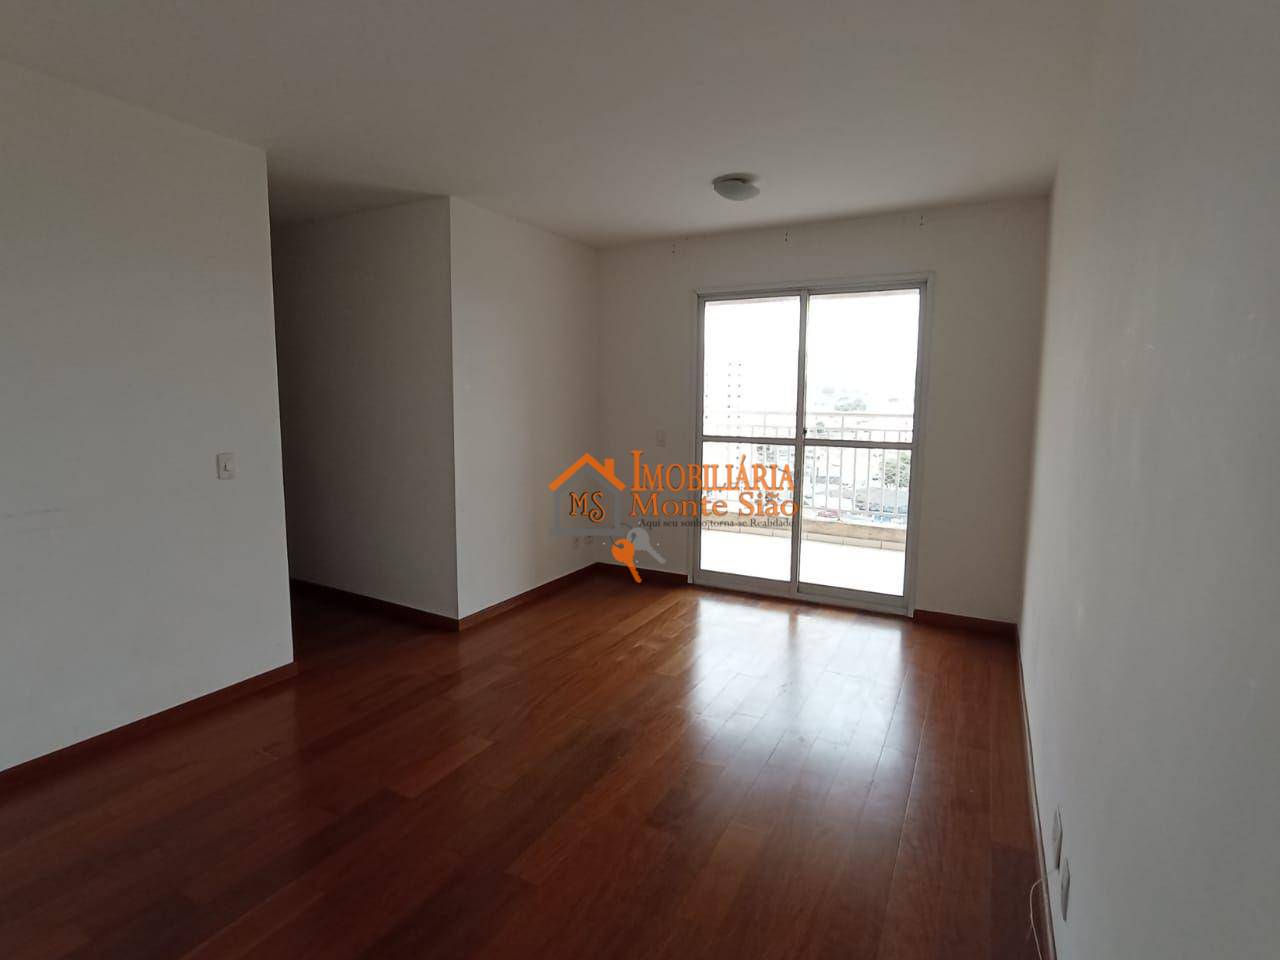 Apartamento com 3 dormitórios à venda, 80 m² por R$ 530.000,00 - Macedo - Guarulhos/SP